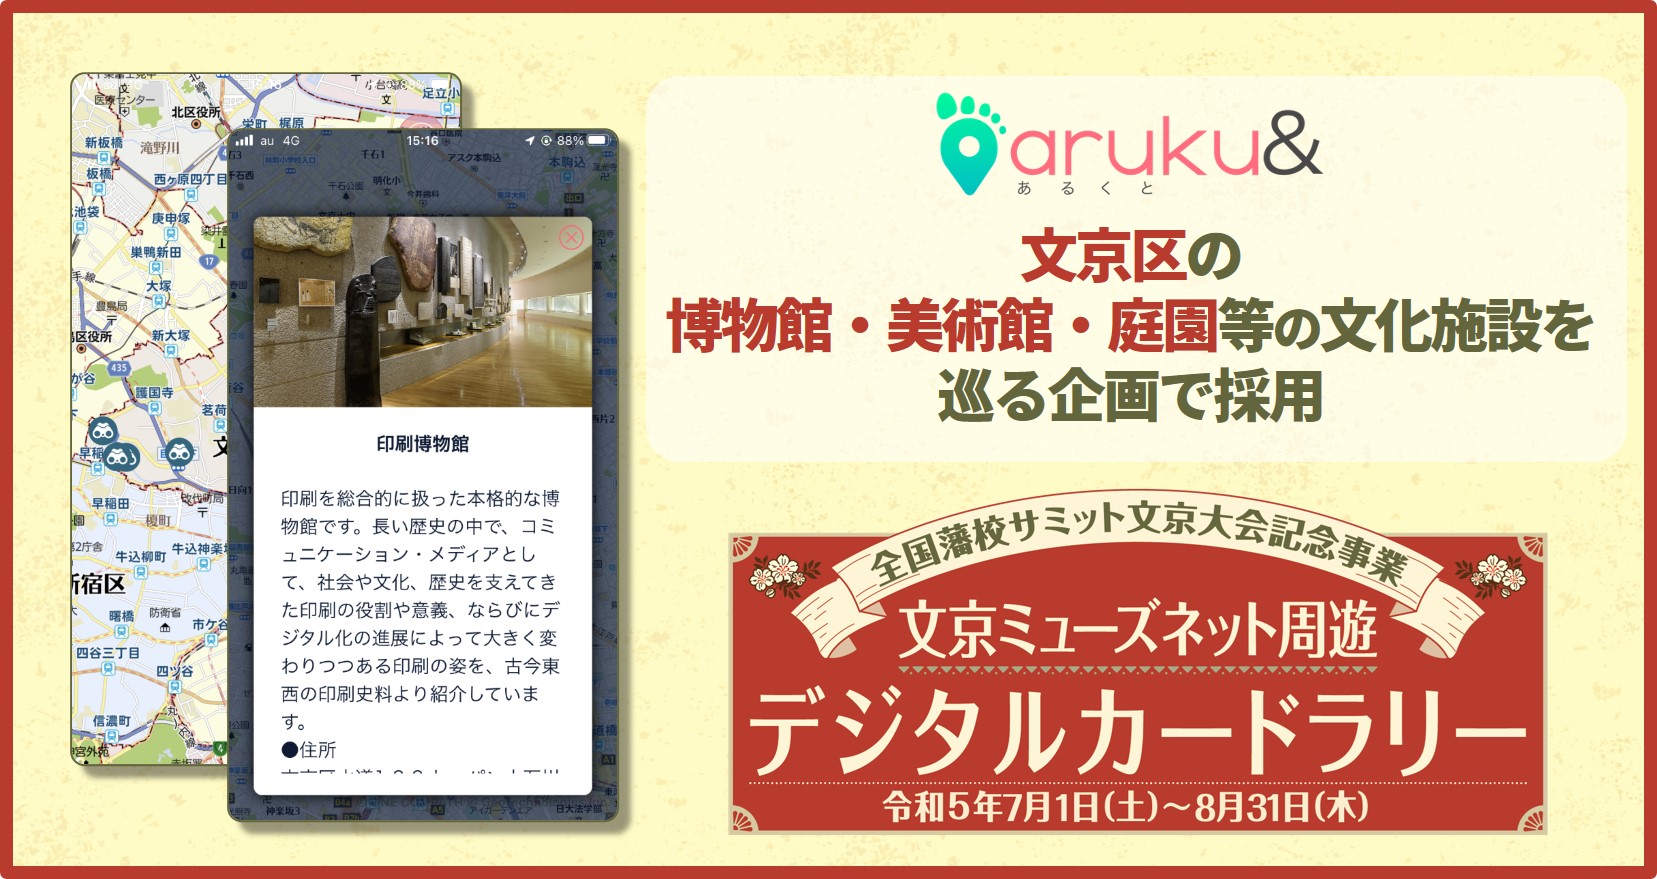 ウォーキングアプリ「aruku&」、 文京区の博物館・美術館・庭園等の文化施設を巡る企画で採用